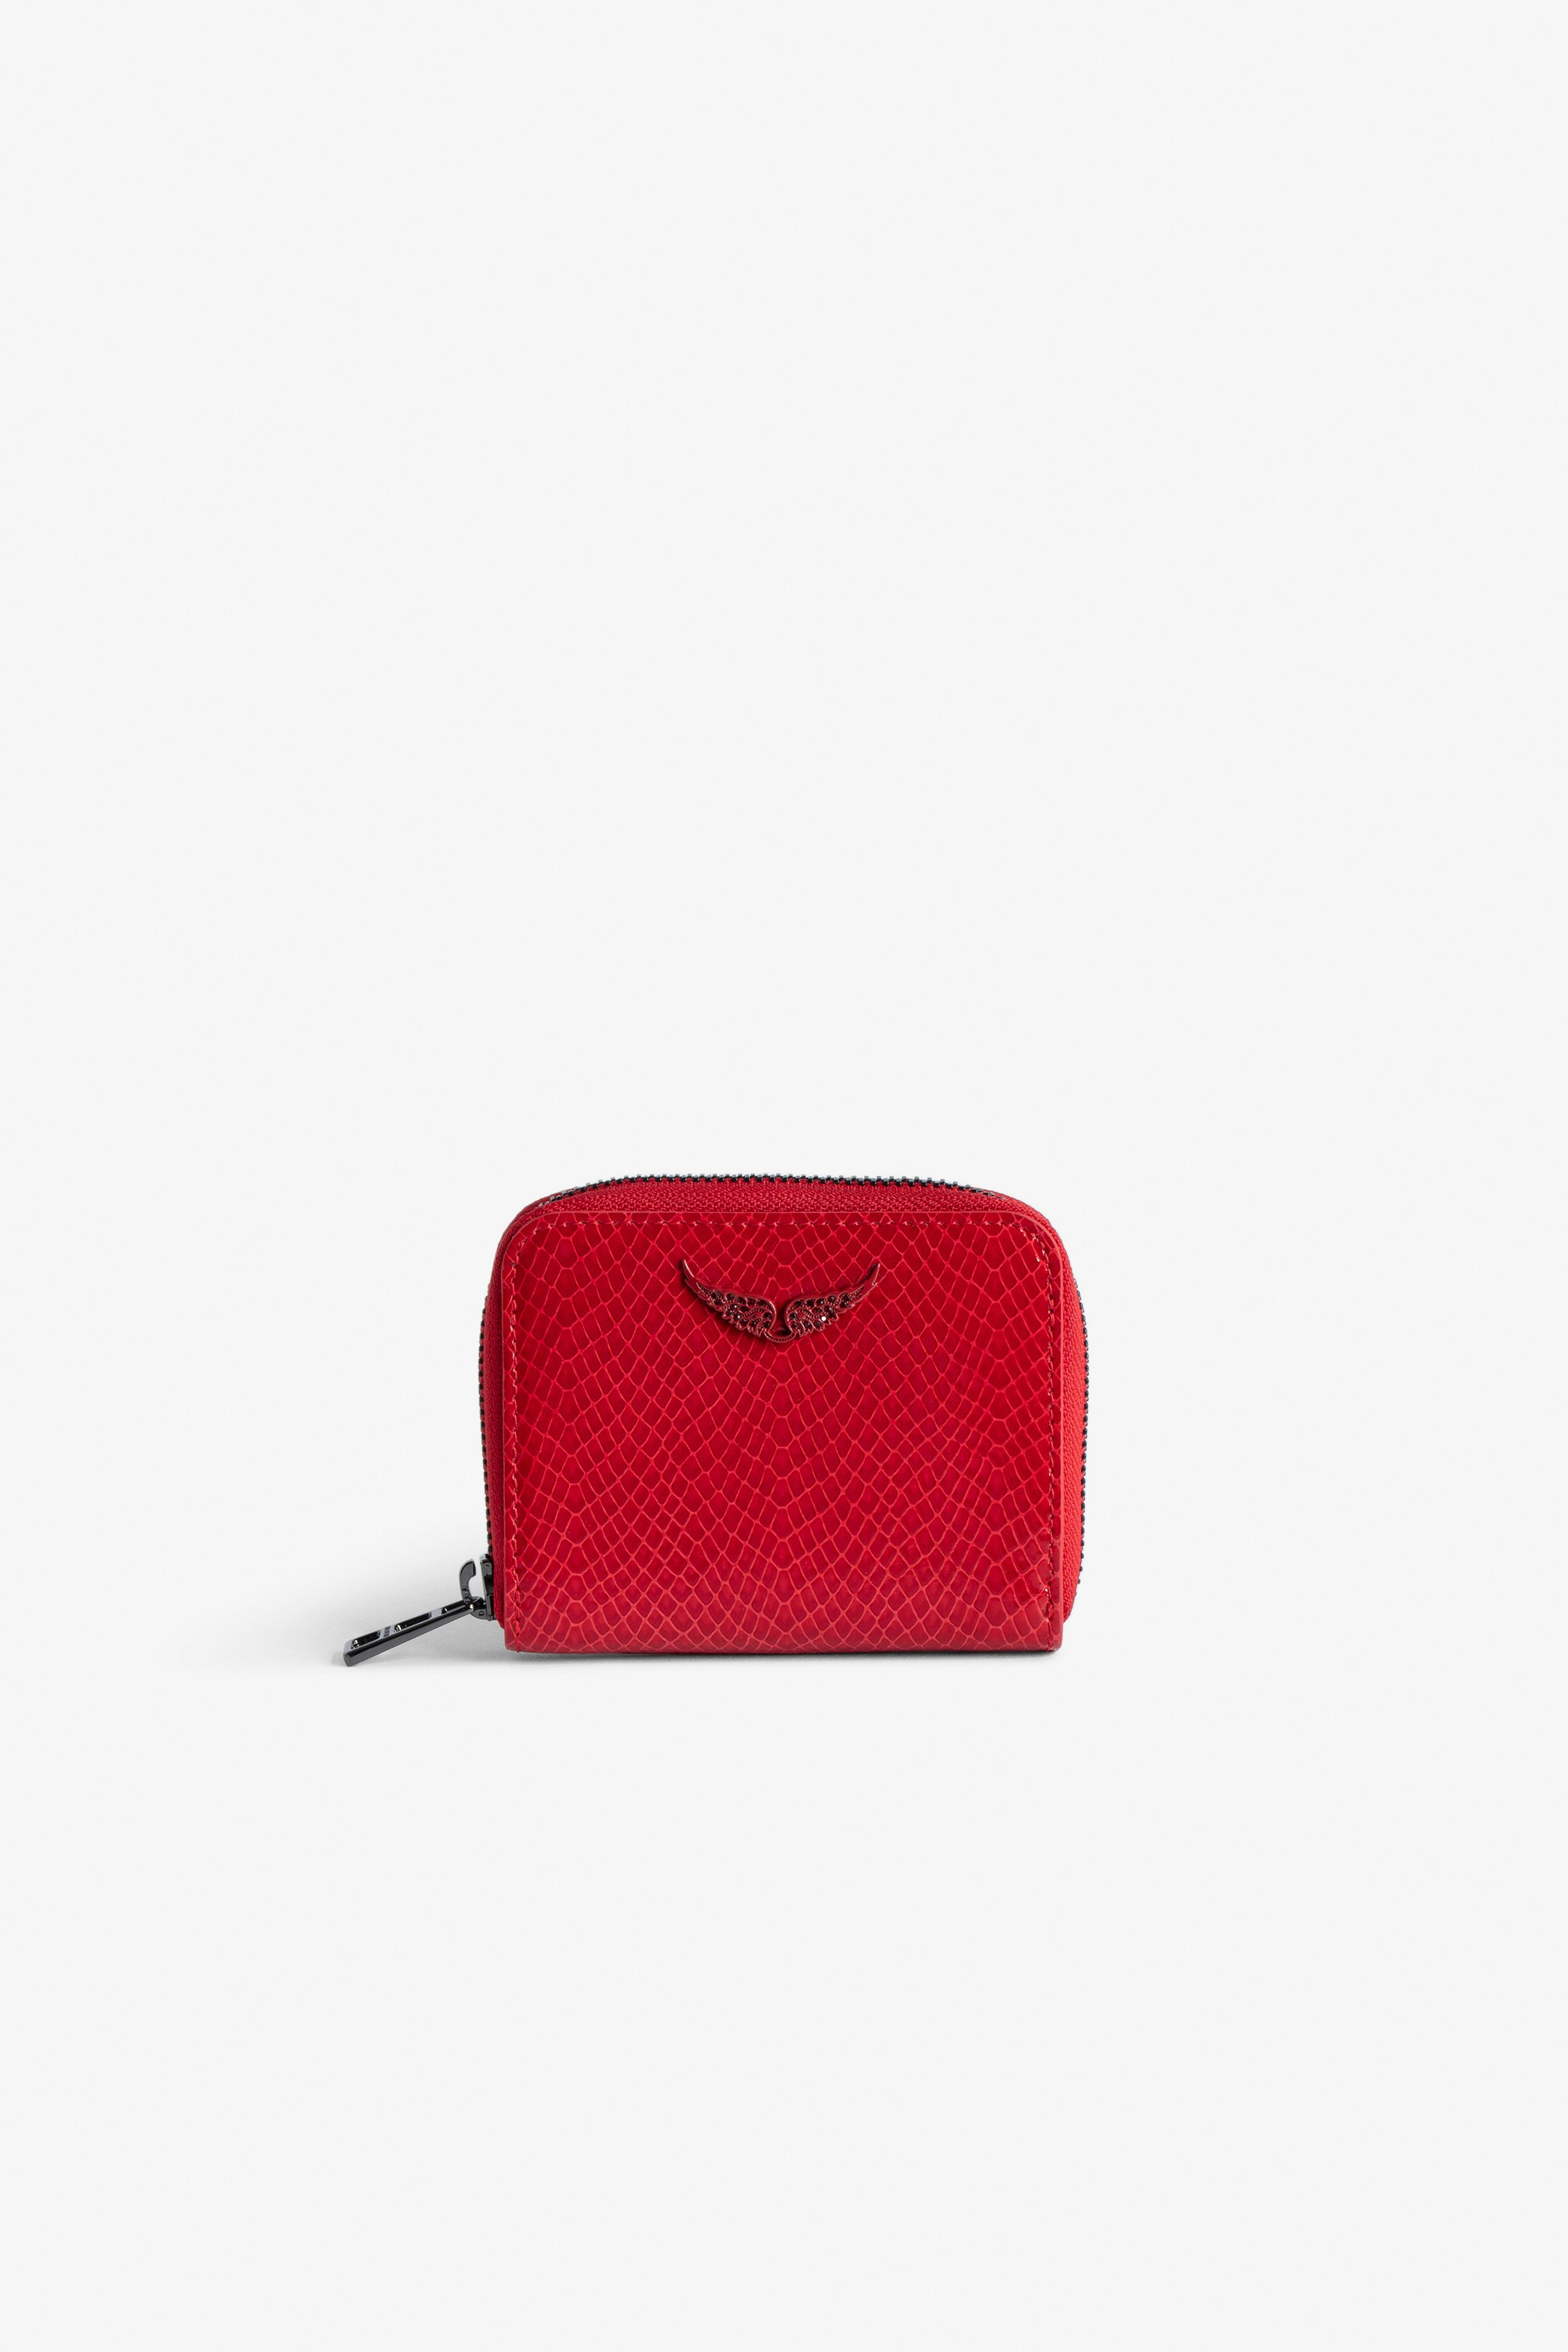 Portemonnaie Mini ZV Glossy Wild Prägung - Brieftasche aus glänzendem, rotem Leder mit Python-Effekt mit einem Flügel-Charm aus Strasssteinen für Damen.